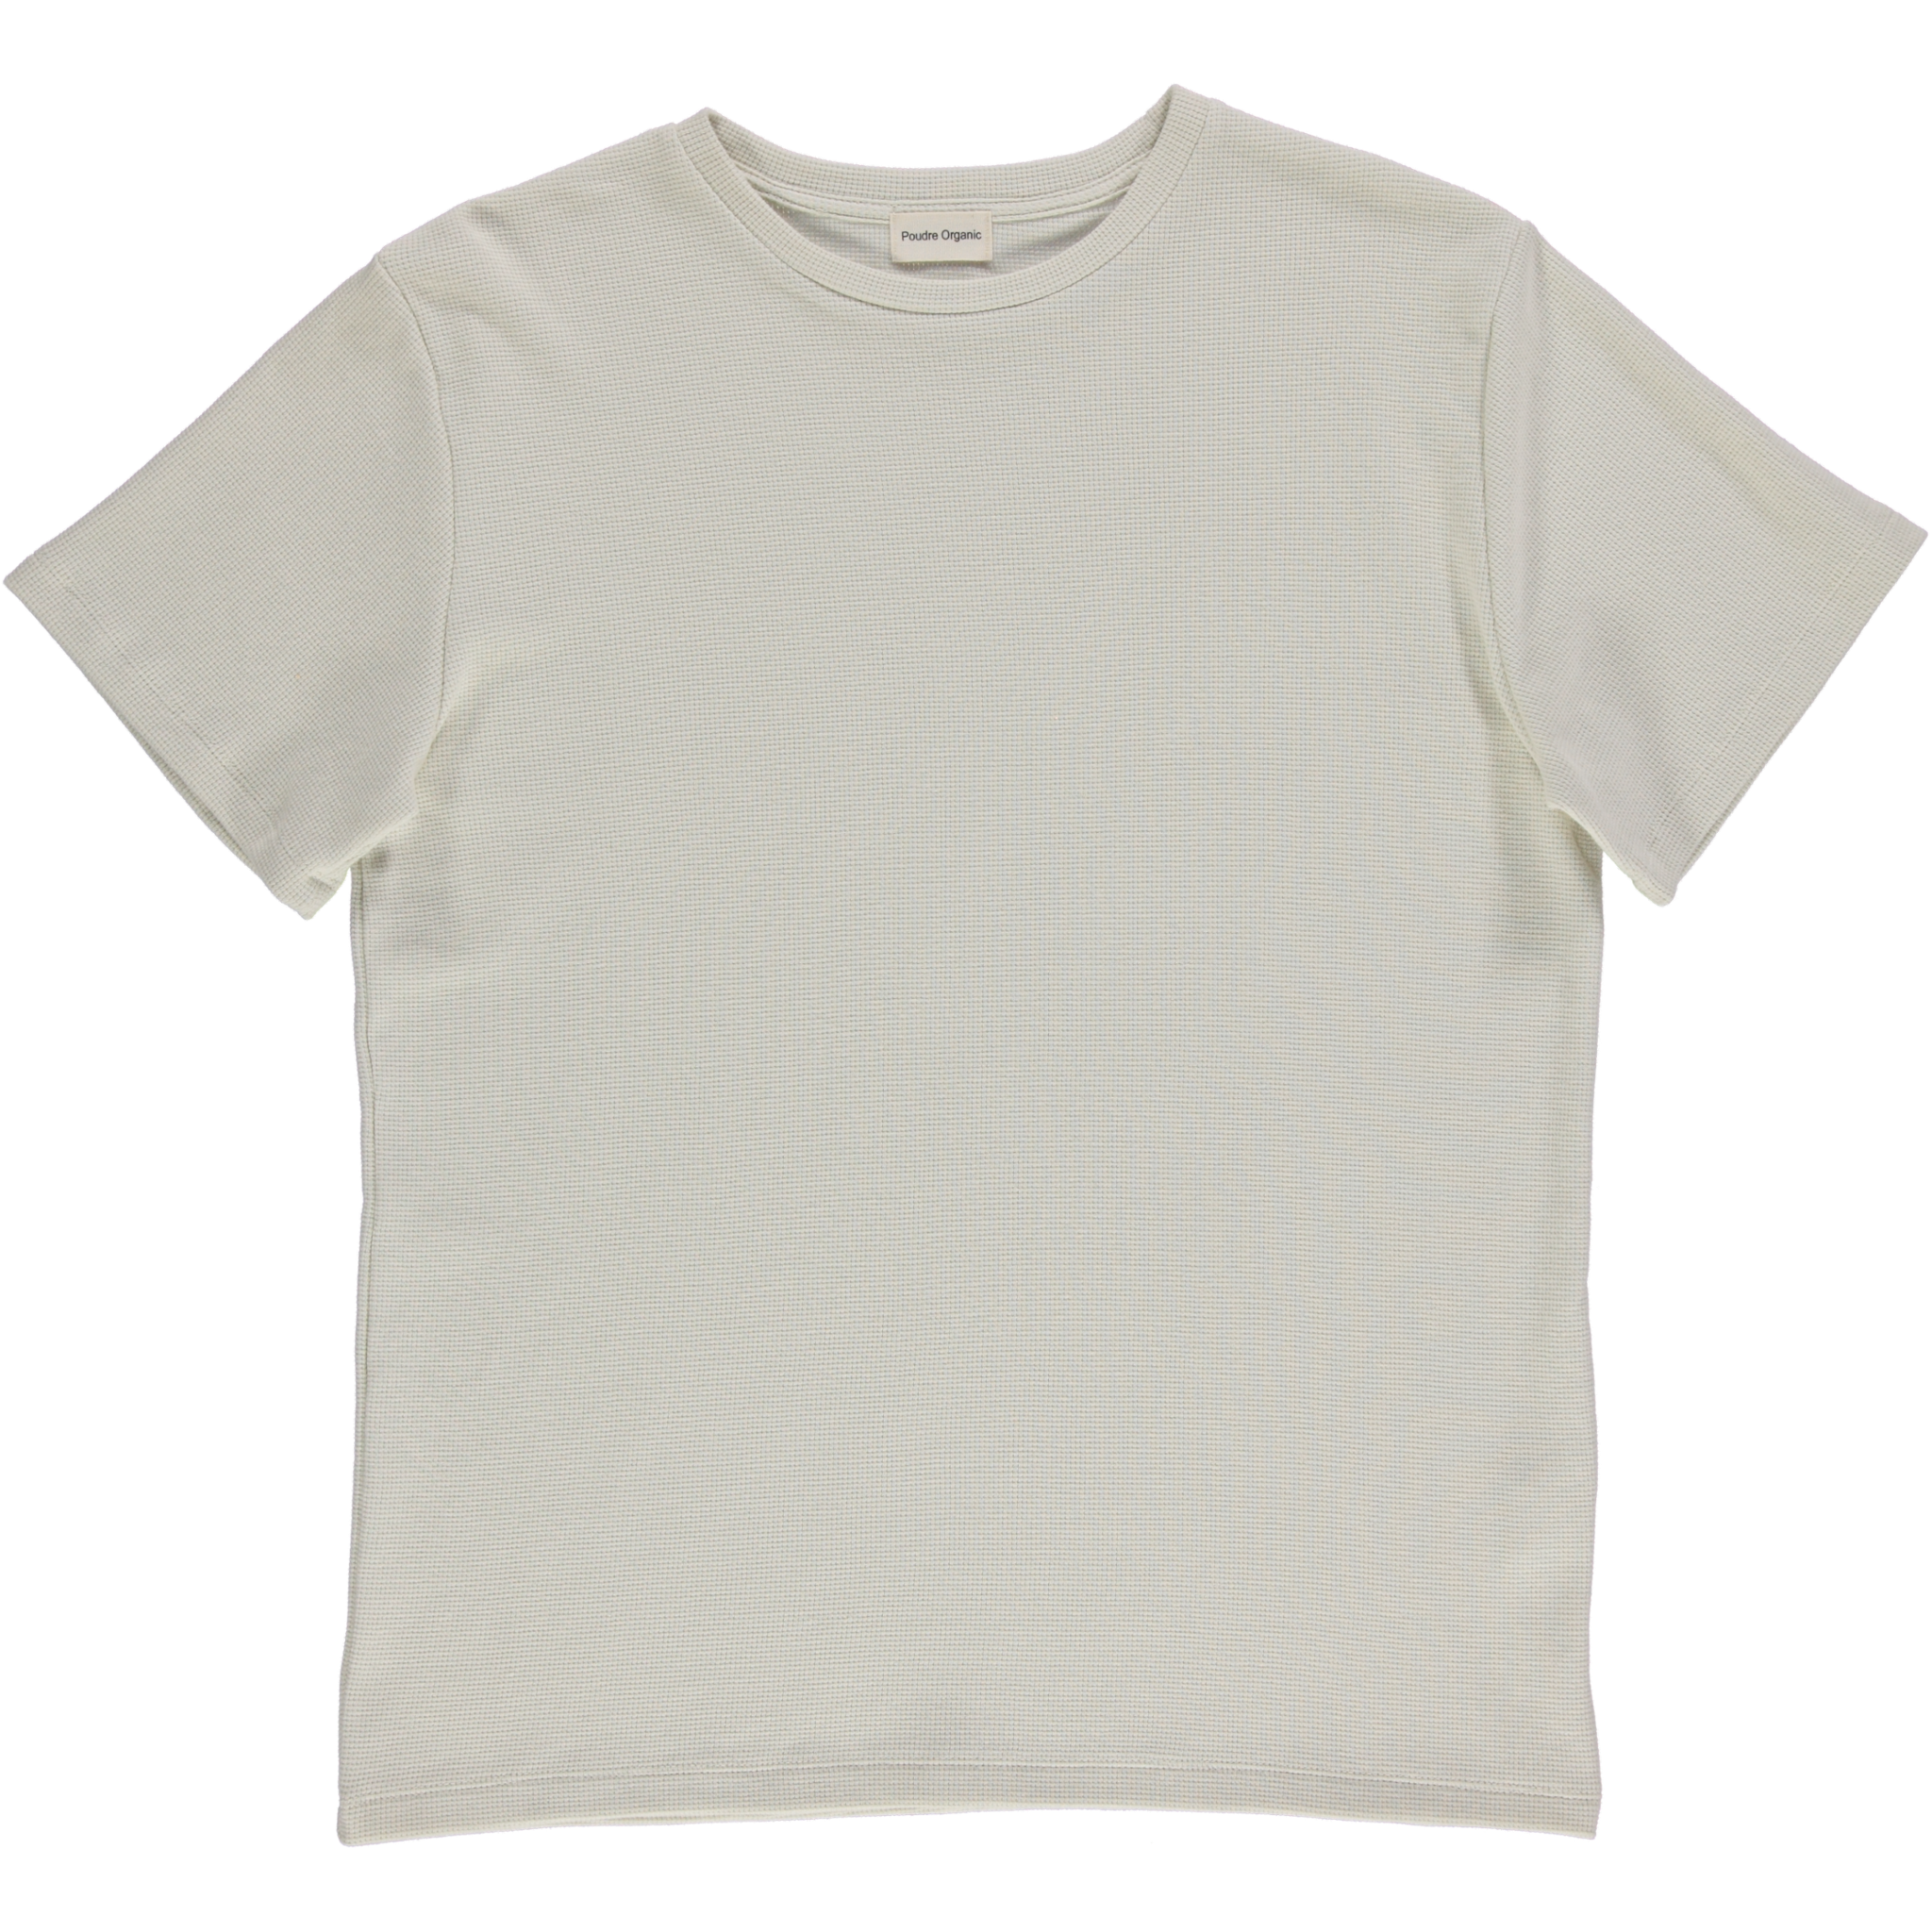 T-Shirt Camiseta nid d'abeille [Almond Milk]